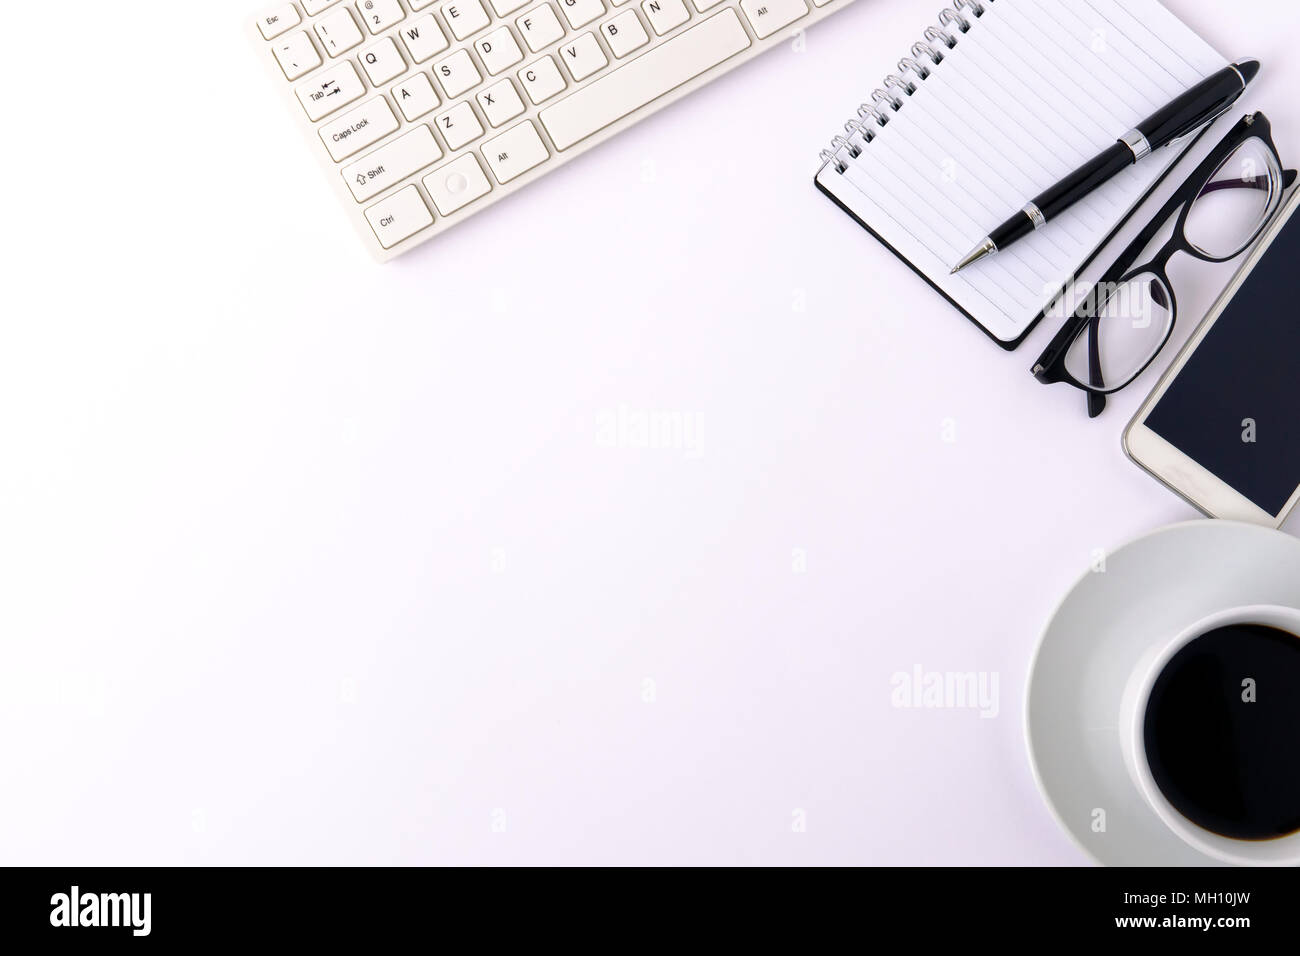 Diseñador de blanco con mesa de oficina en blanco página del bloc de notas con el smartphone, lápiz, teclado de ordenador, anteojos y una taza de café. Vista superior, plano laical. Foto de stock